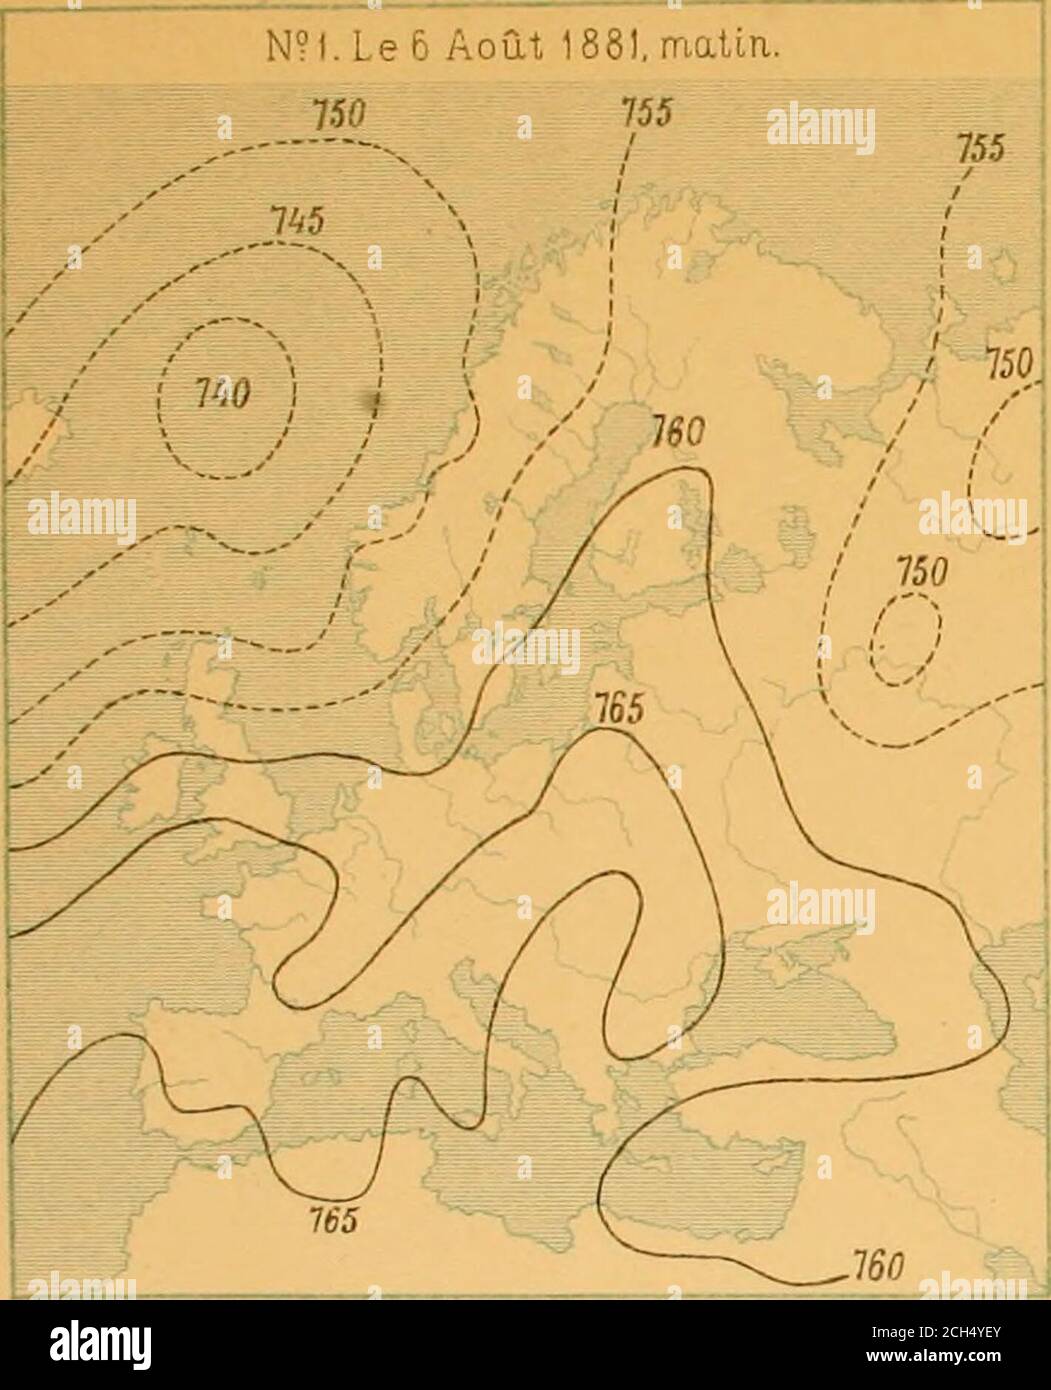 . Nova acta Regiae Societatis Scientiarum Upsaliensis . e. —En Suède les grêles ne sont guère plus fréquentes. Sur 14745 orages1325 ont été suivis de grêle, ou à peu près un sur onze. Leur fréquencecorrespond dailleurs en général à celle des orages. Les grêles sontles plus nombreuses dans les parties ouest et sudouest du pays, etdans les gouvernements situés autour des grands lacs, le Venern, le Vet-tern, le Hjelmaren et le Mälaren. En Norrland et sur le Gothland lesgrêles sont rares et leurs dégâts peu importants. Dans le Svealand etle Götaland des pertes ont parfois lieu, bien que beaucoup p Stock Photo